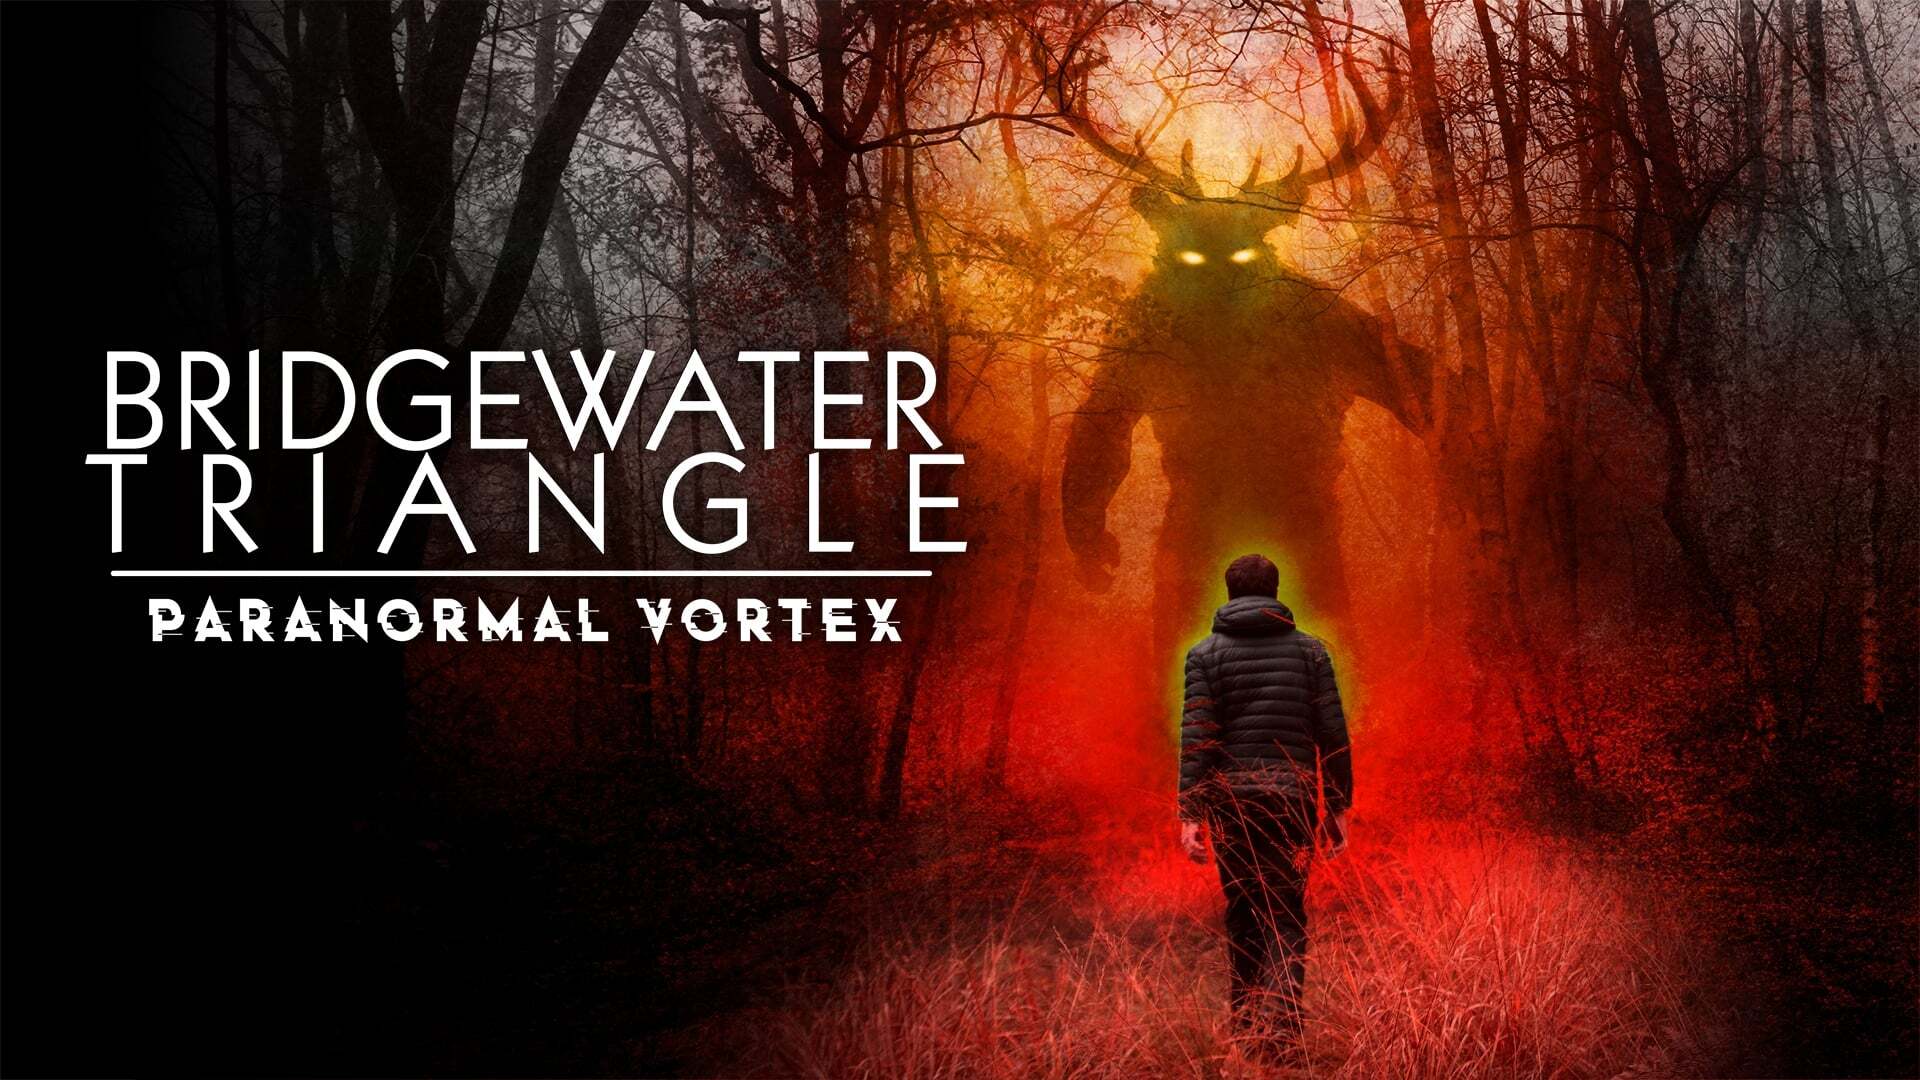 ბრიჯვოტერის სამკუთხედი: პარანორმალური მორევი / Bridgewater Triangle: Paranormal Vortex